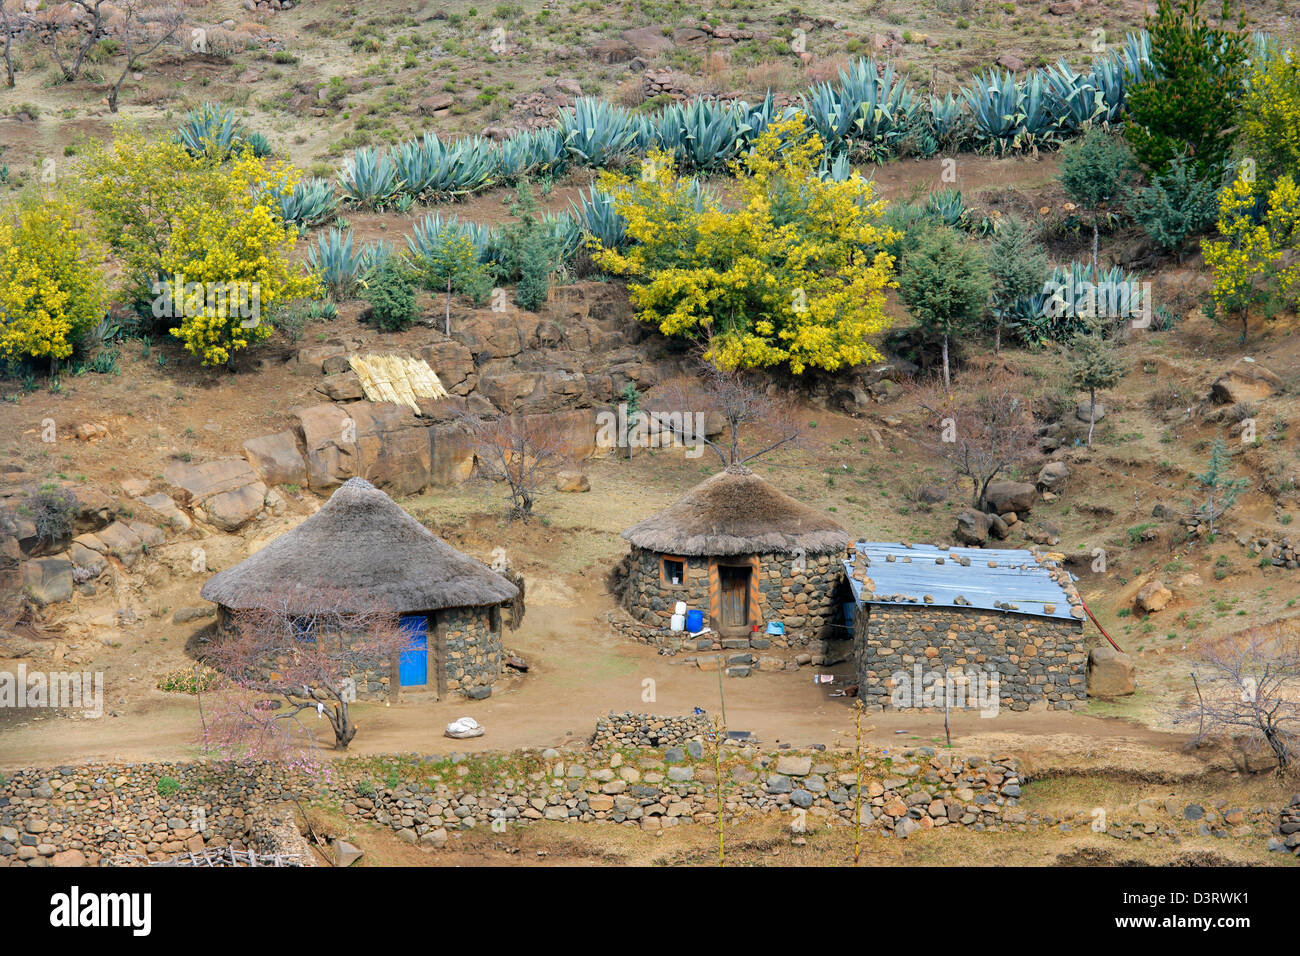 De petites huttes typiques de peuplement rural dans le Royaume du Lesotho, Afrique du Sud Banque D'Images